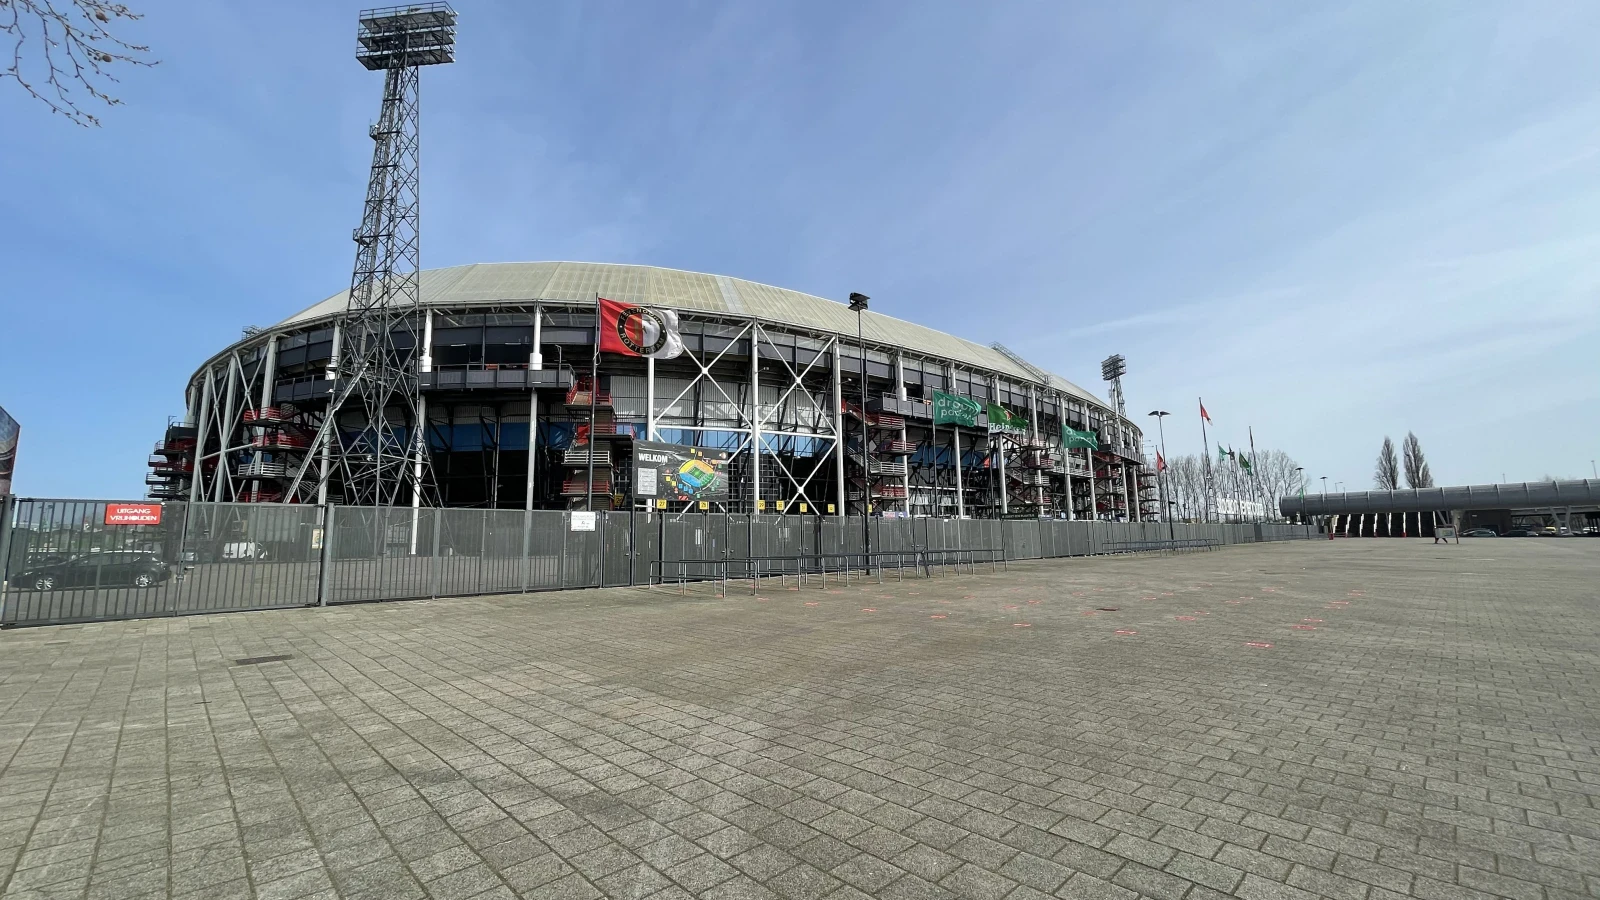 Rijnmond: 'Feyenoord en Stadion Feijenoord akkoord over nieuw huurcontract'